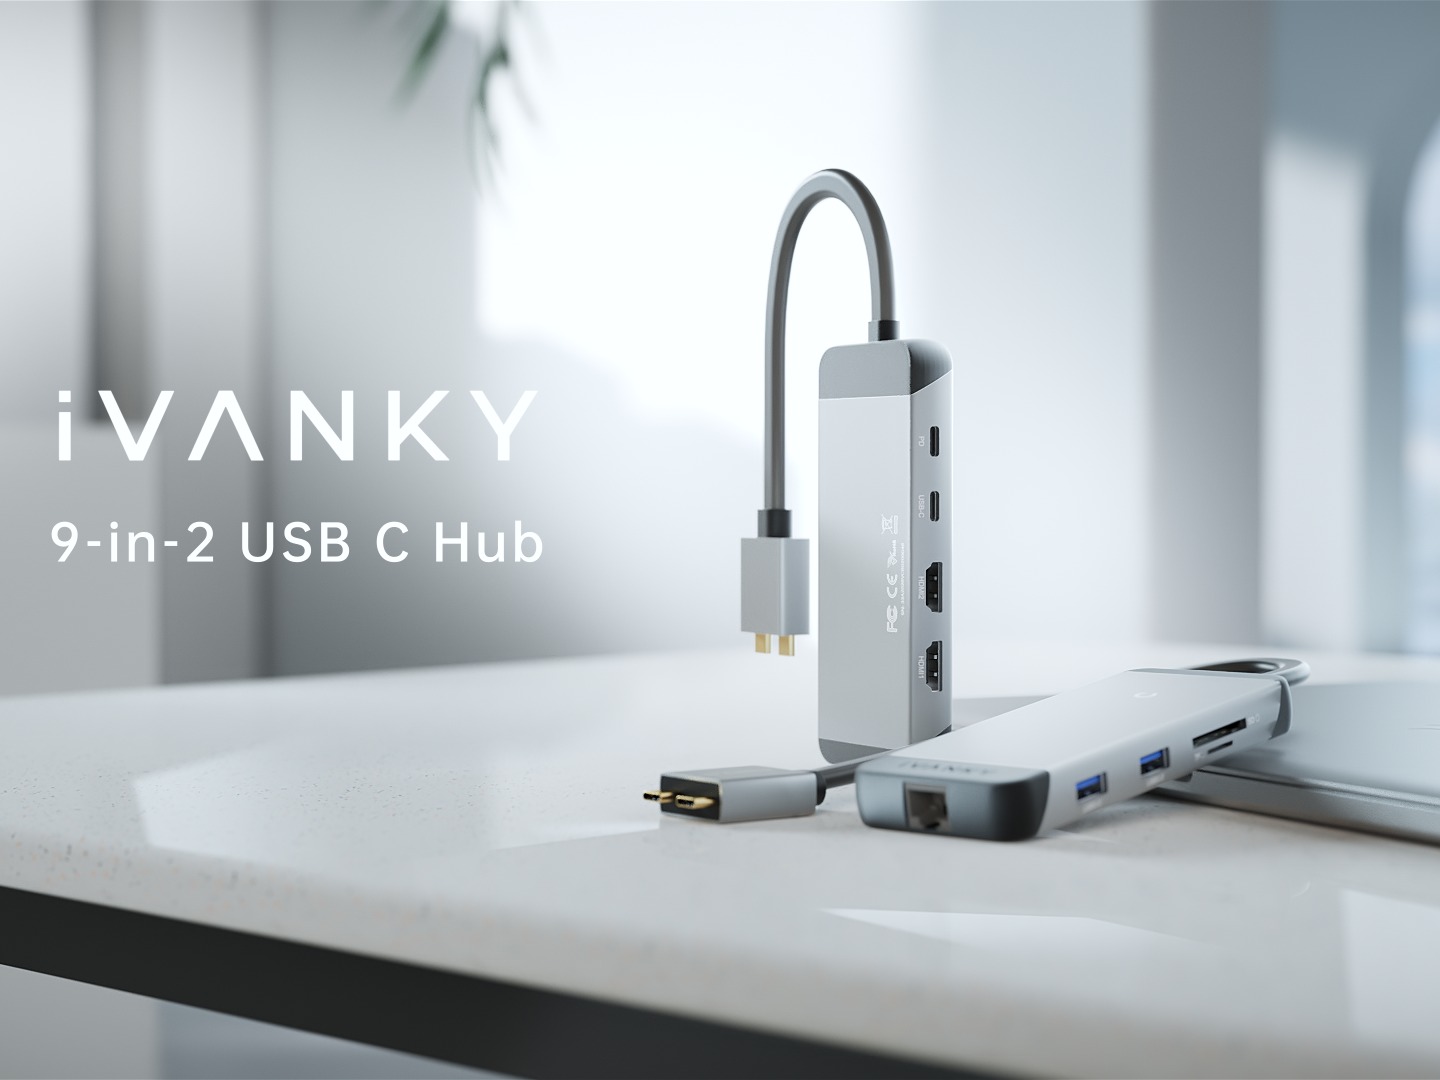 iVANKY 9-in-2 USB-C Hub